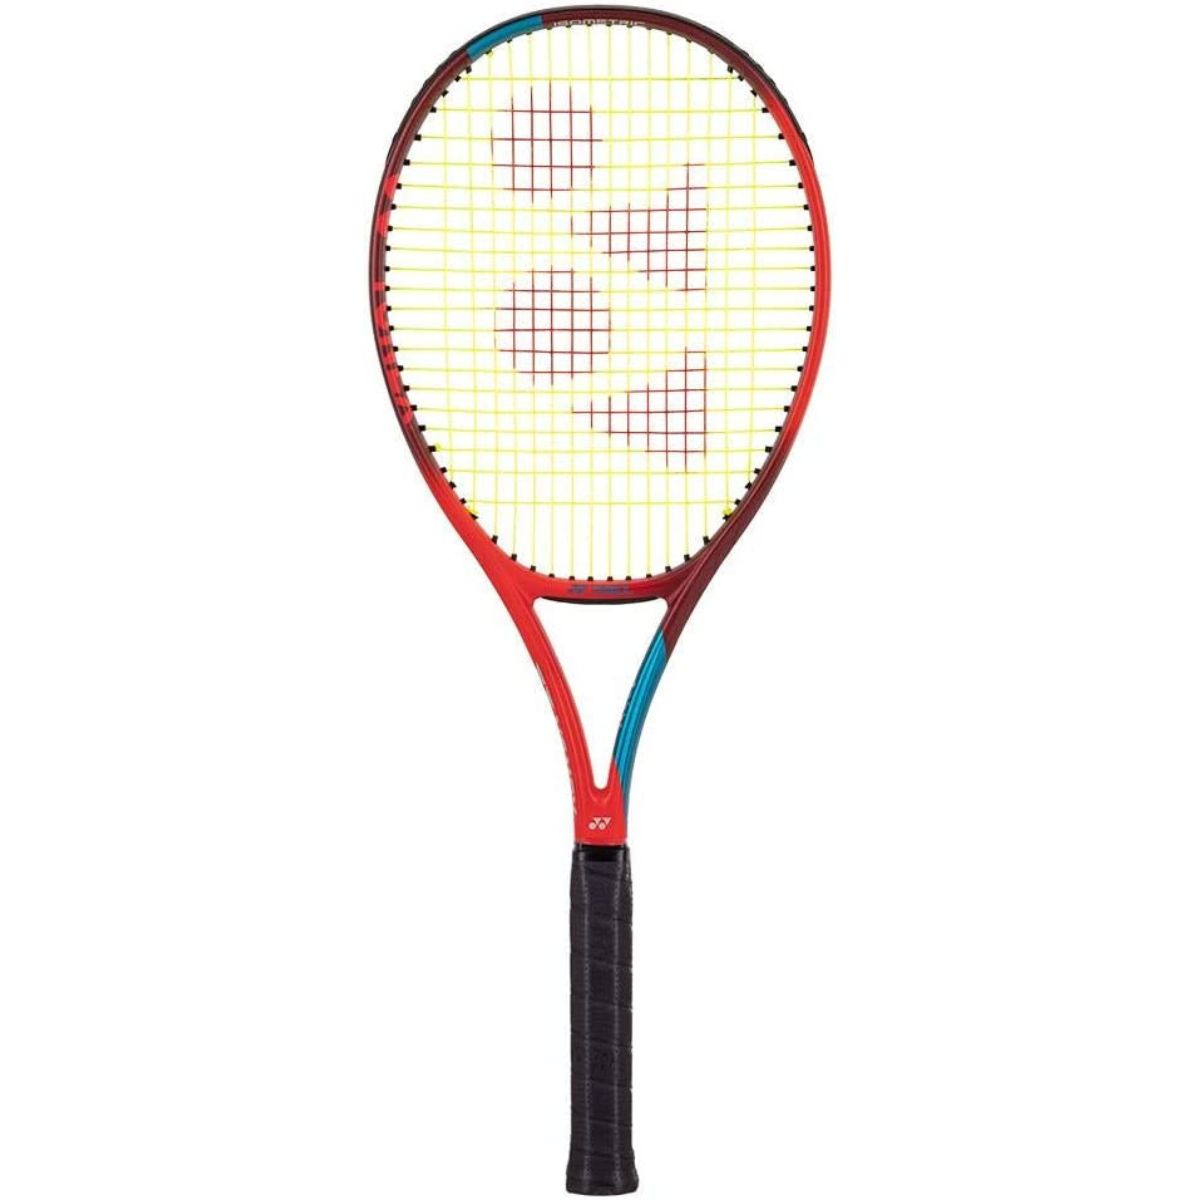 Yonex VCORE 95 tennis racket review